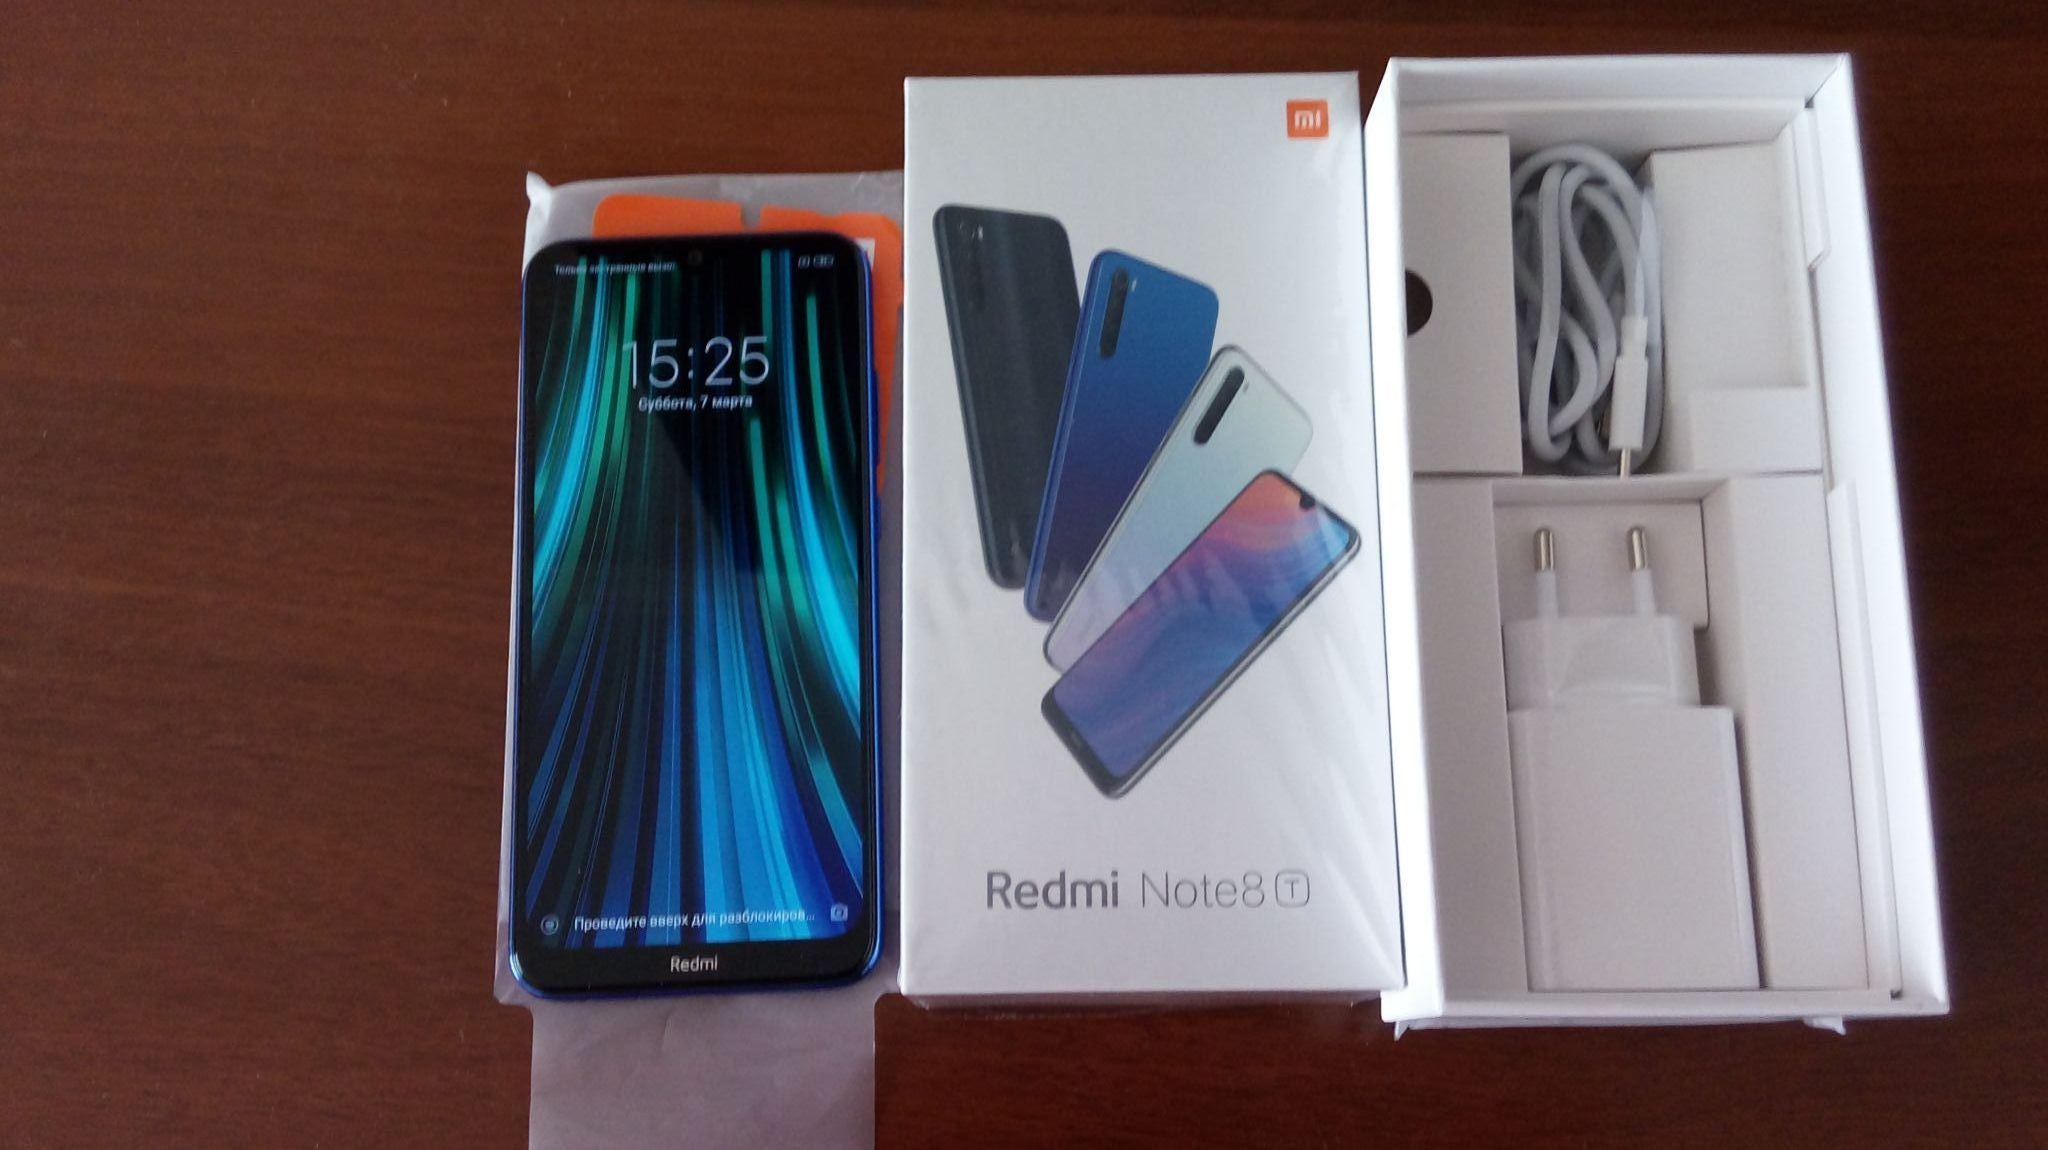 Redmi 8 4 64gb. Xiaomi Redmi Note 8 т. Xiaomi Redmi Note 8t 4/64gb. Смартфон Xiaomi Redmi Note 8 4/64 ГБ. Redmi Note 8t 32gb.